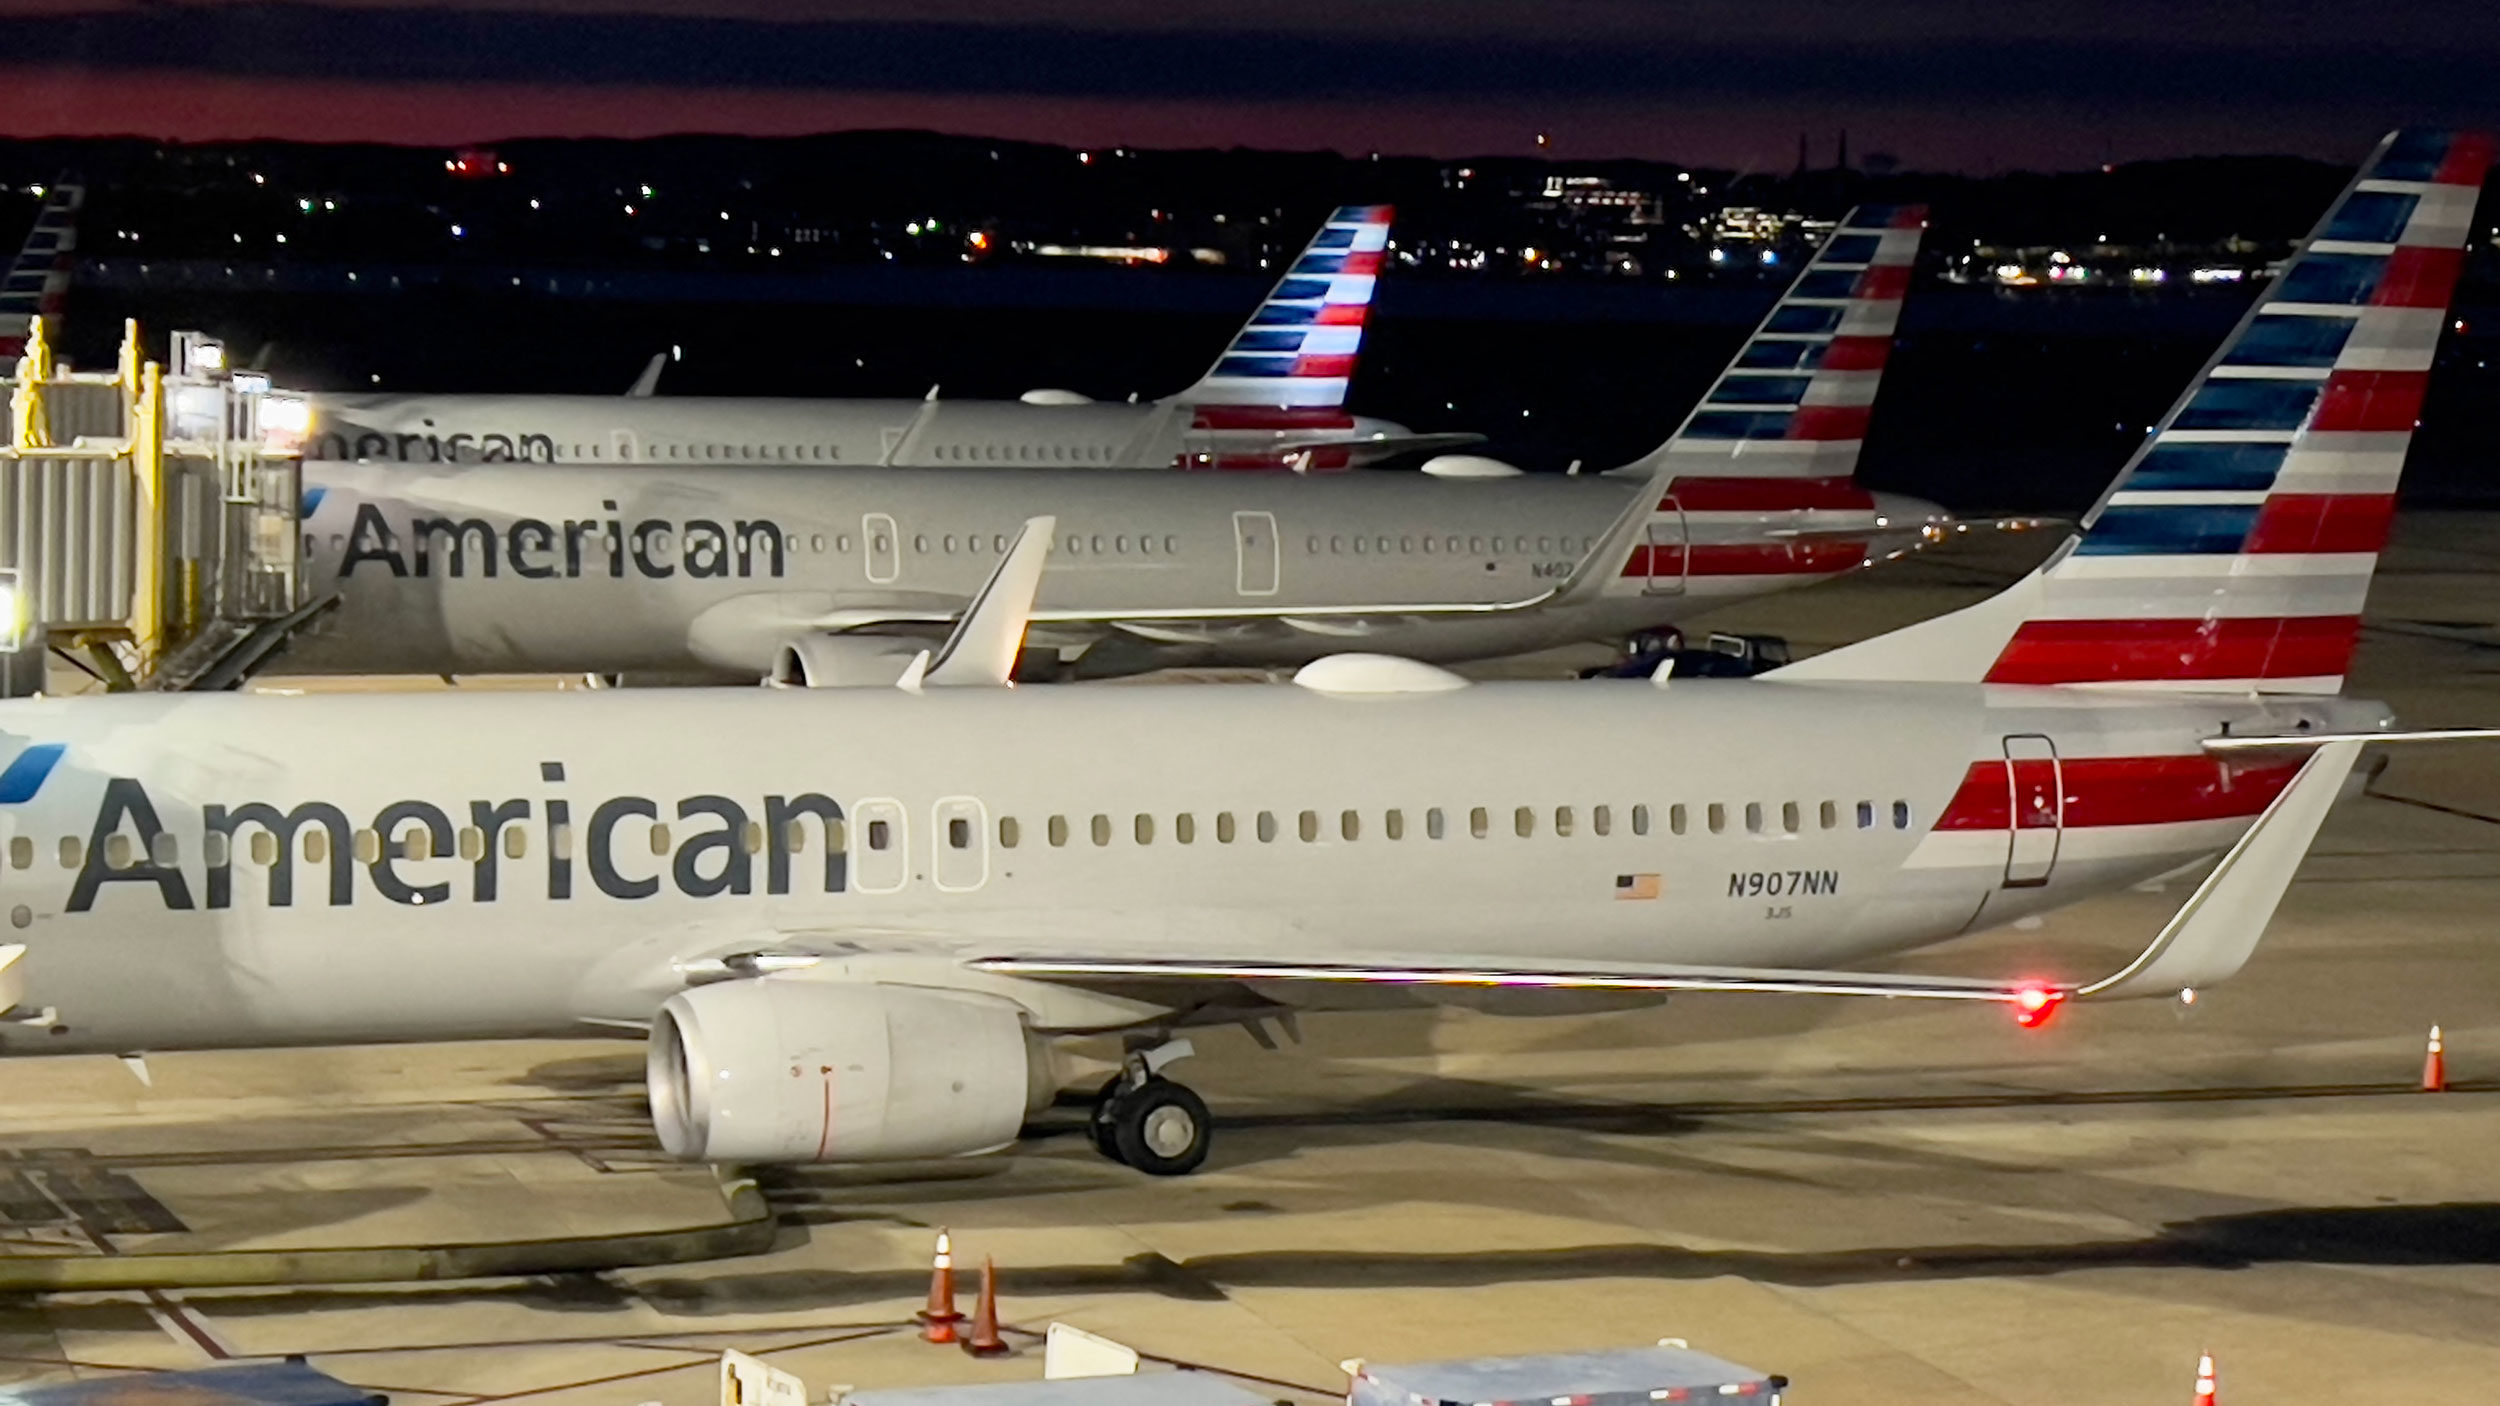 American Airlines planes sit at gates at Ronald Reagan Washington National Airport (DCA) in Arlingt...